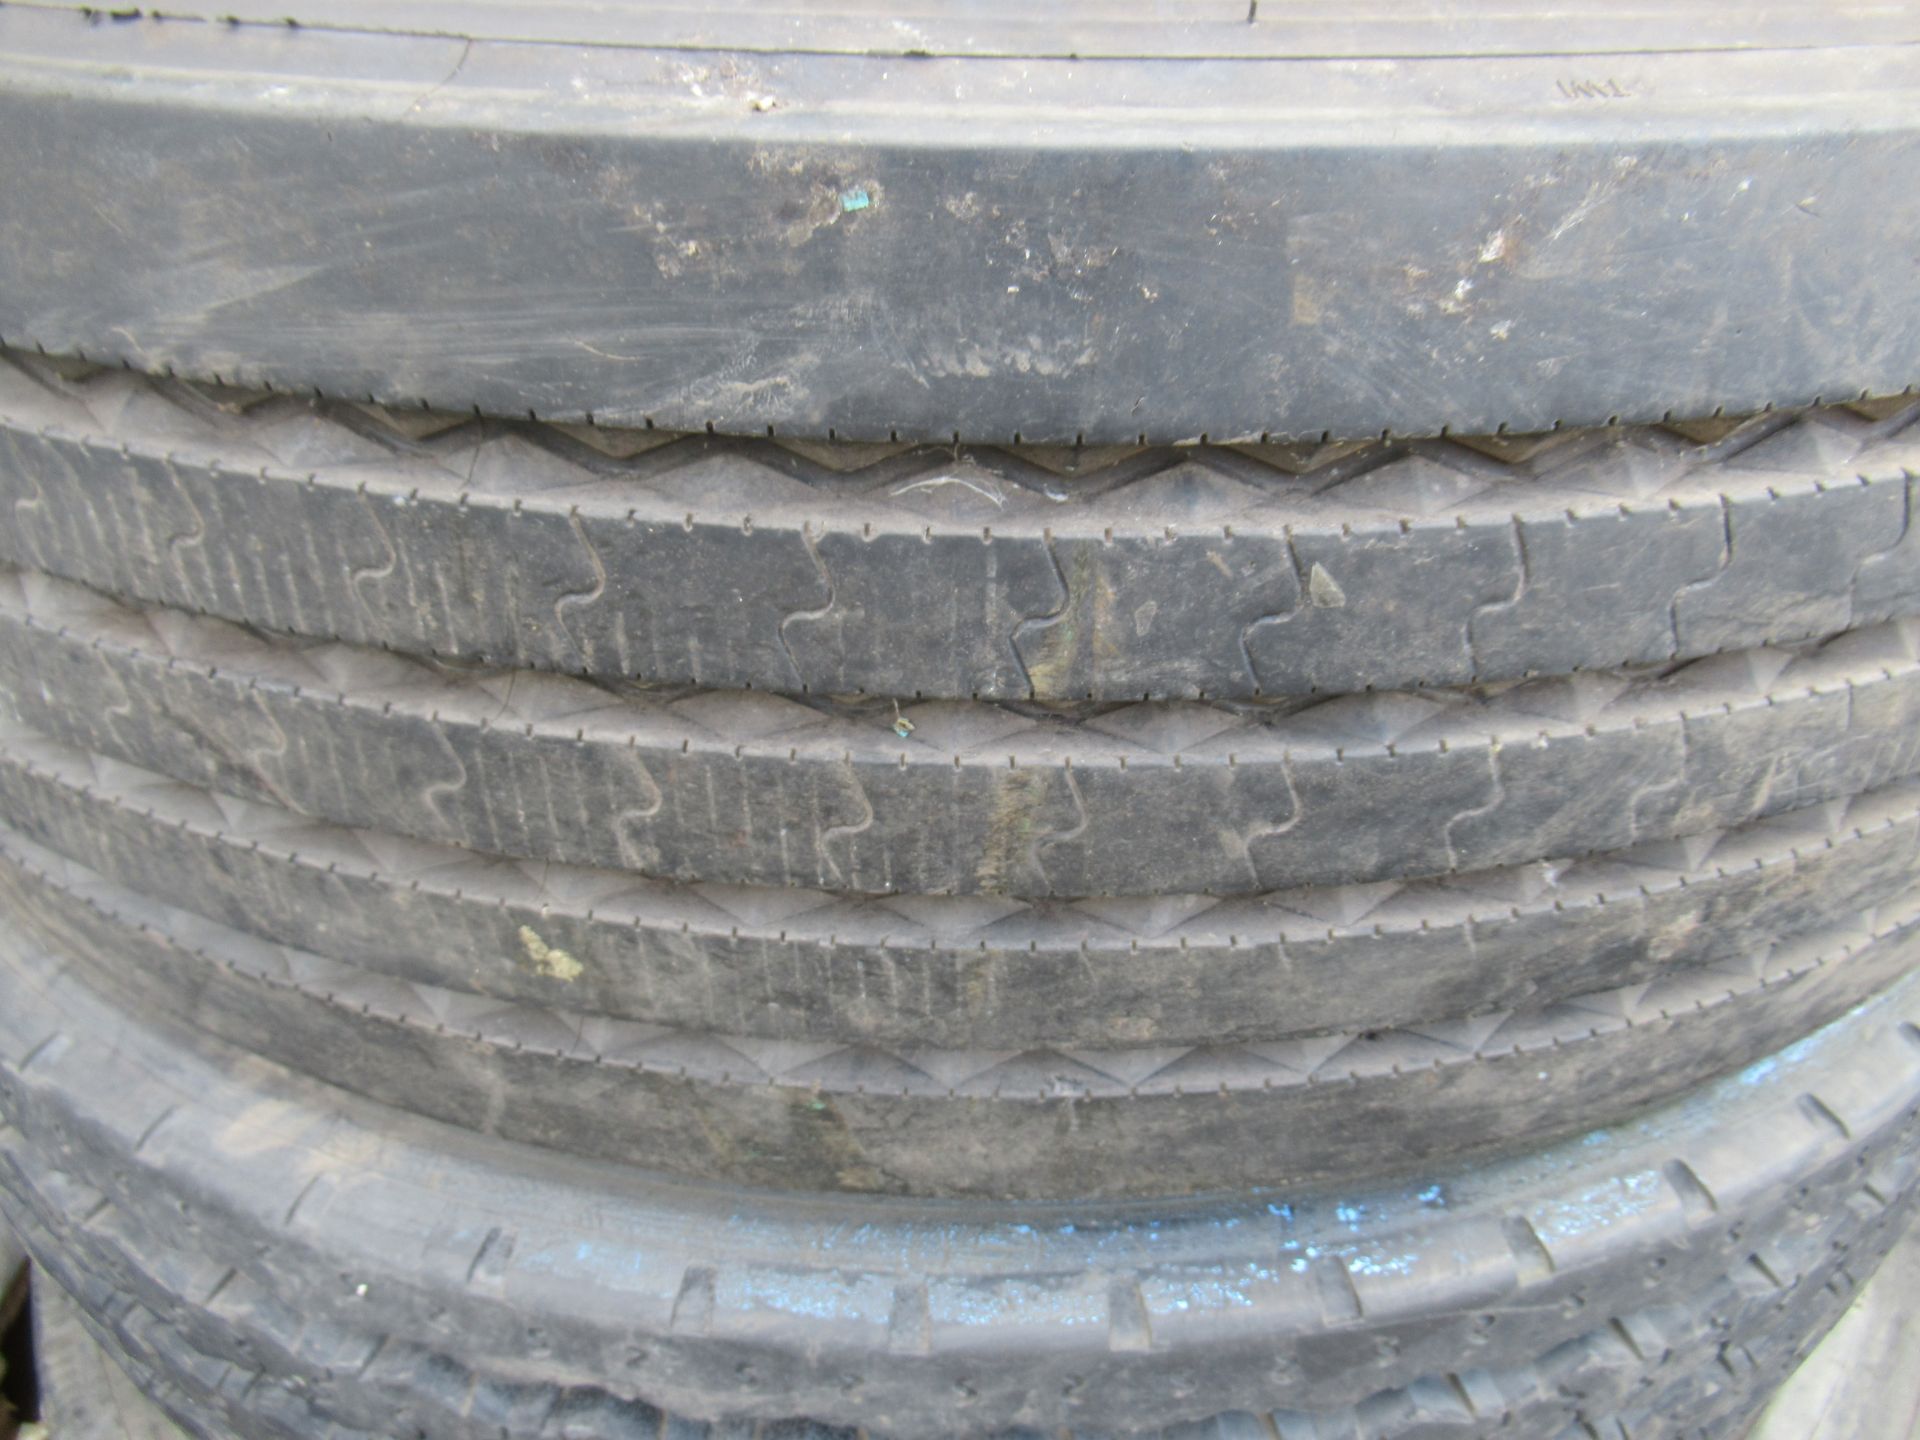 3x Partworn Tyres (275/70R/22.5, 275/80R/22.5, 275/80R/22.5) - Image 4 of 6